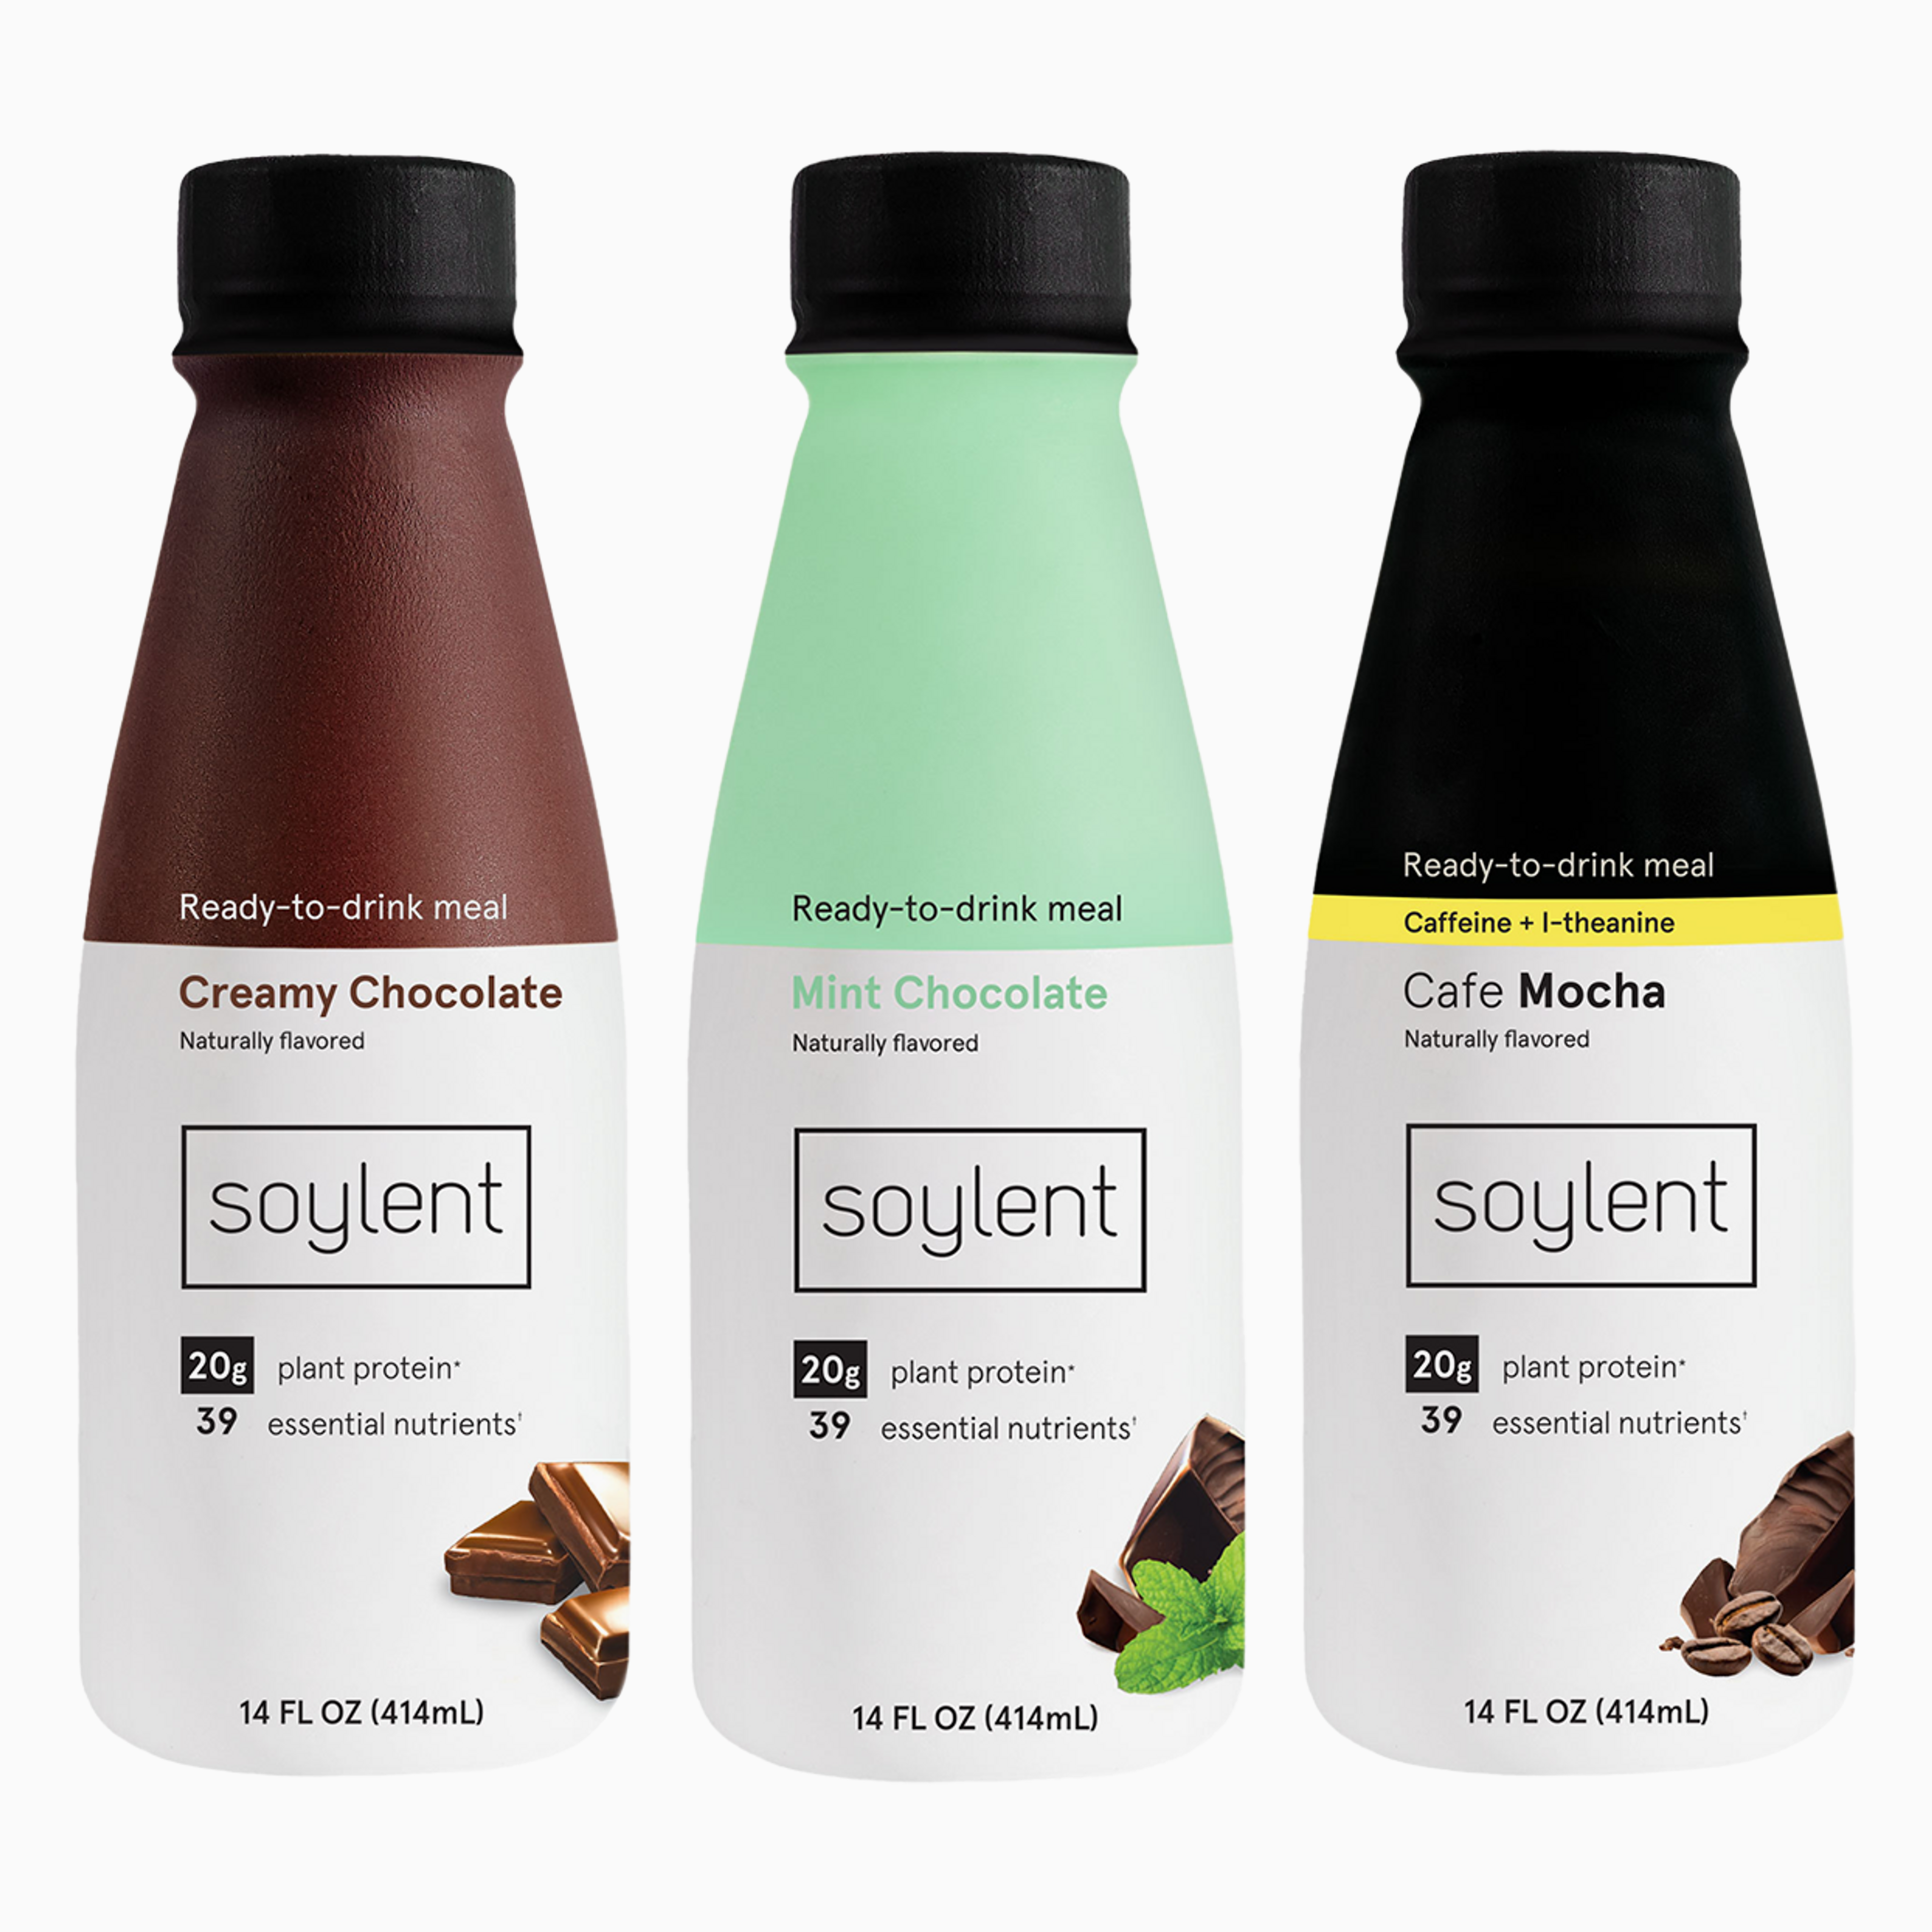 Soylent complete meal chocolate lover's 36 bottle bundle